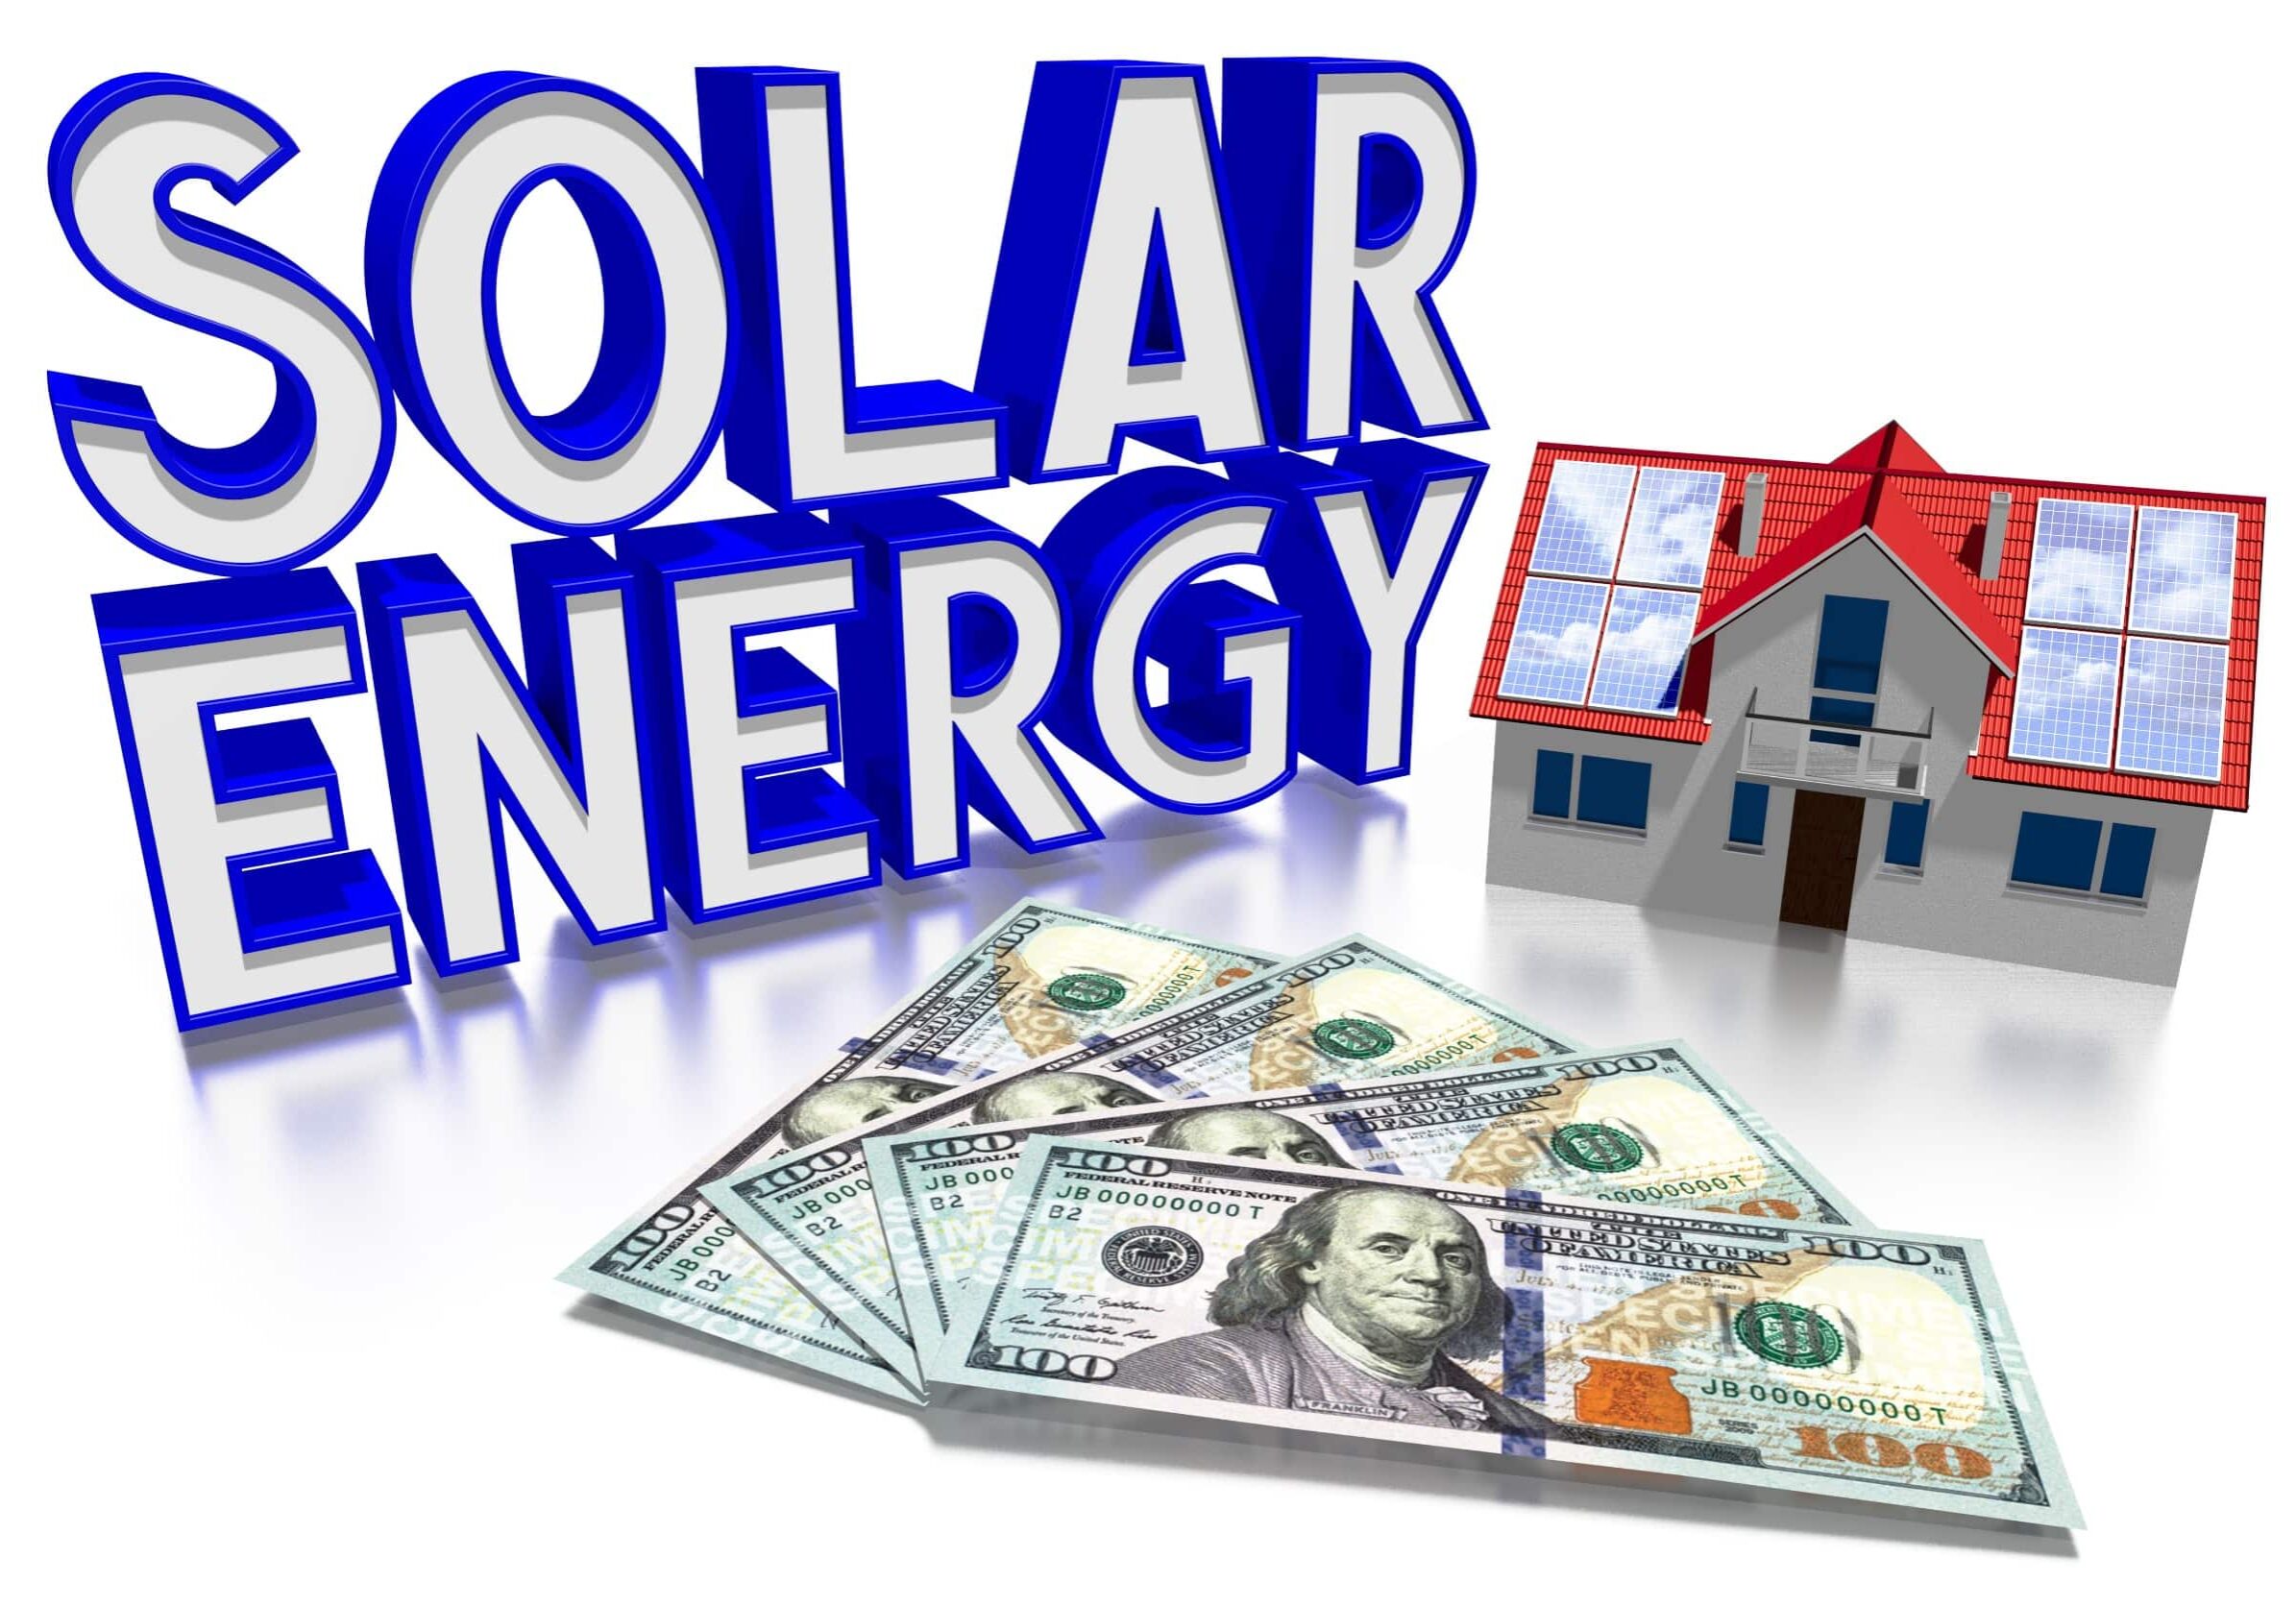 Solar_Energy-House-Cash